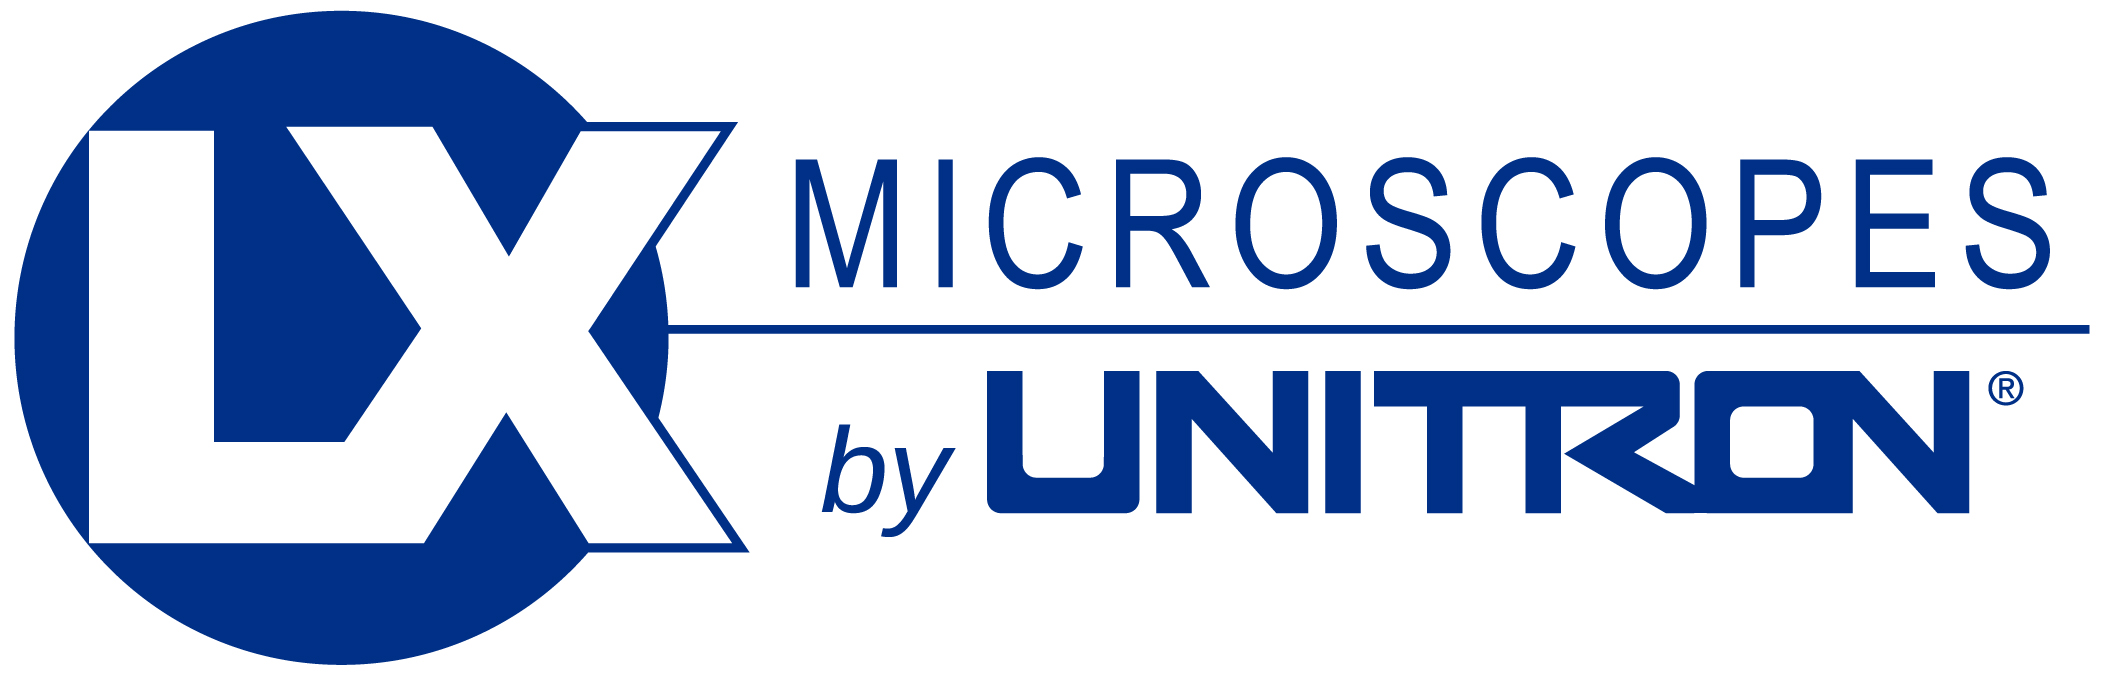 New LX Microscopes by UNITRON logo